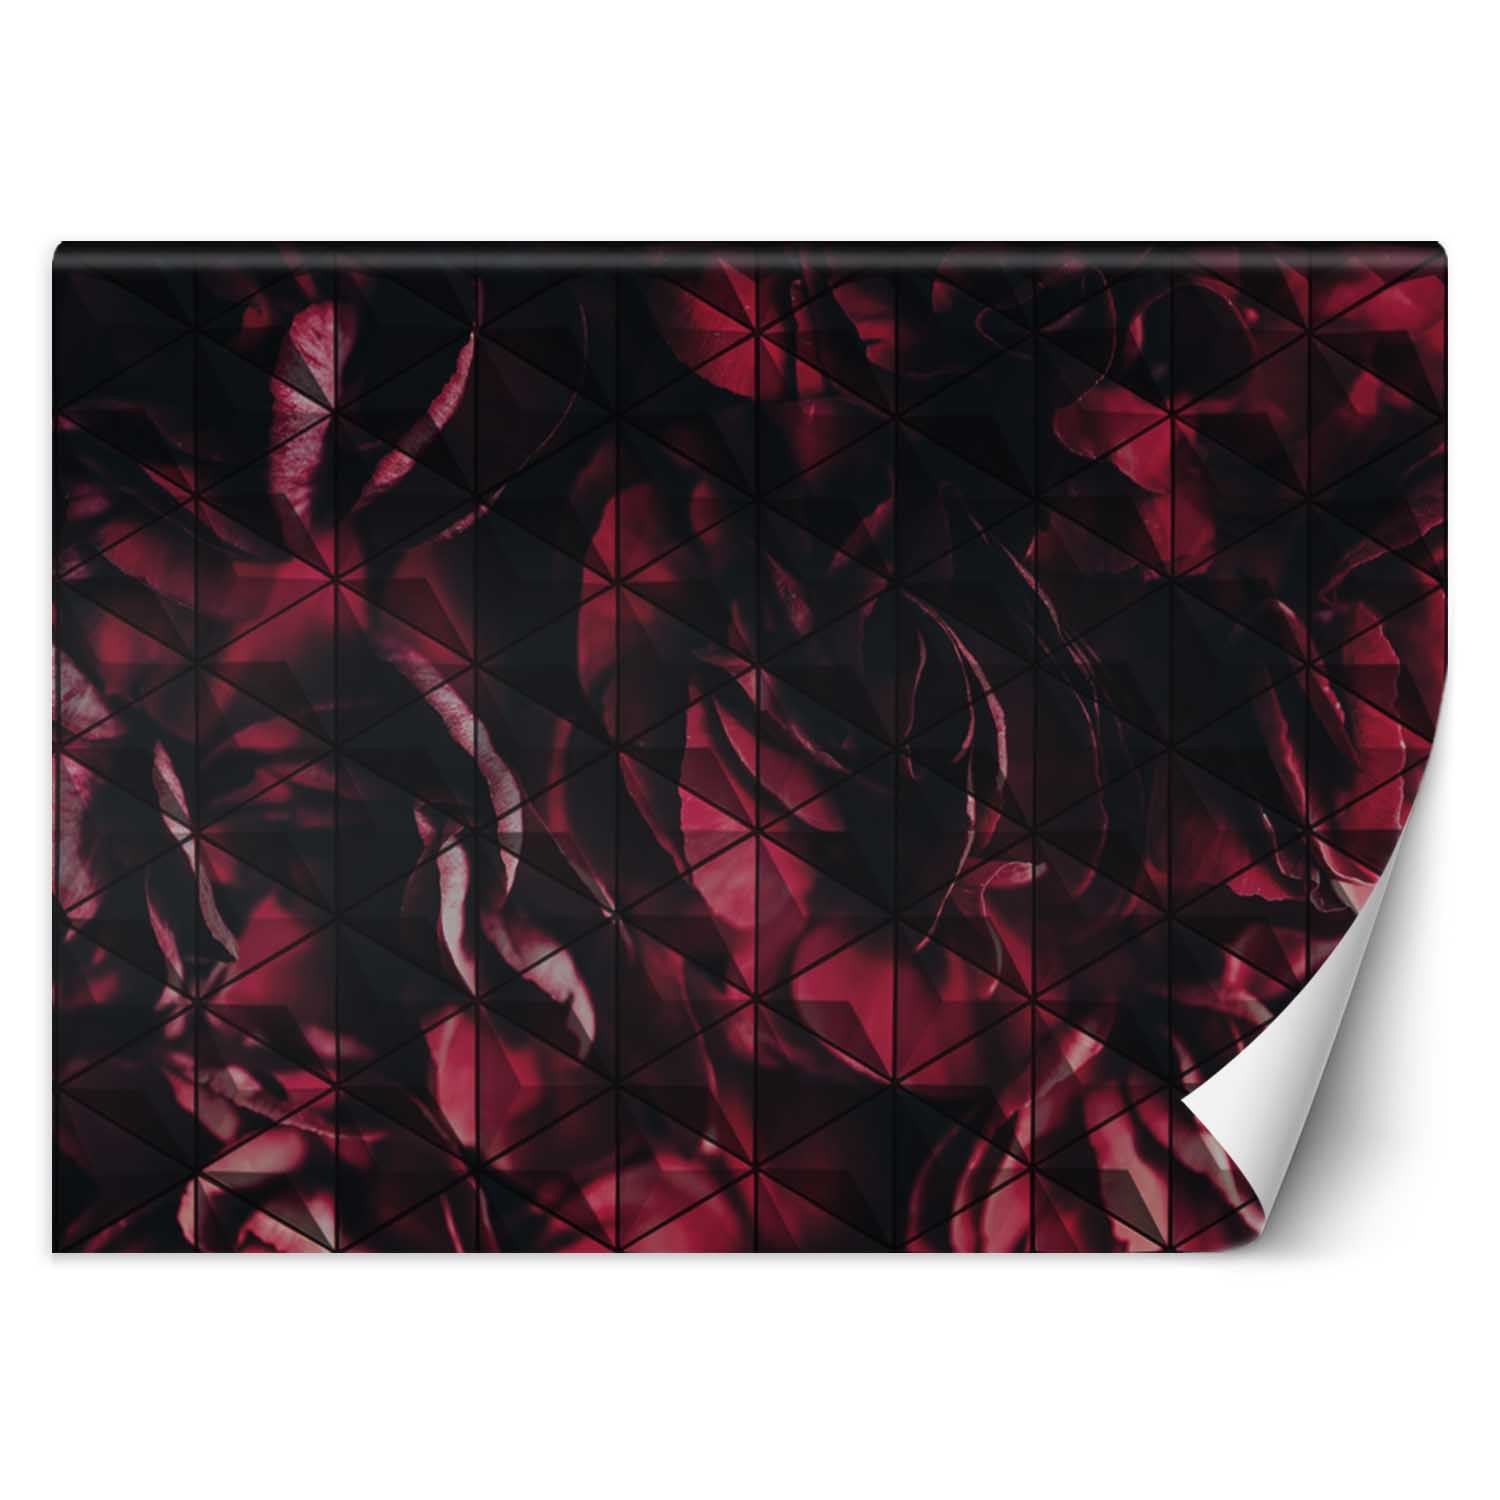 Trend24 – Behang – Rode Bloemblaadjes – Vliesbehang – Behang Woonkamer – Fotobehang – 450x315x2 cm – Incl. behanglijm